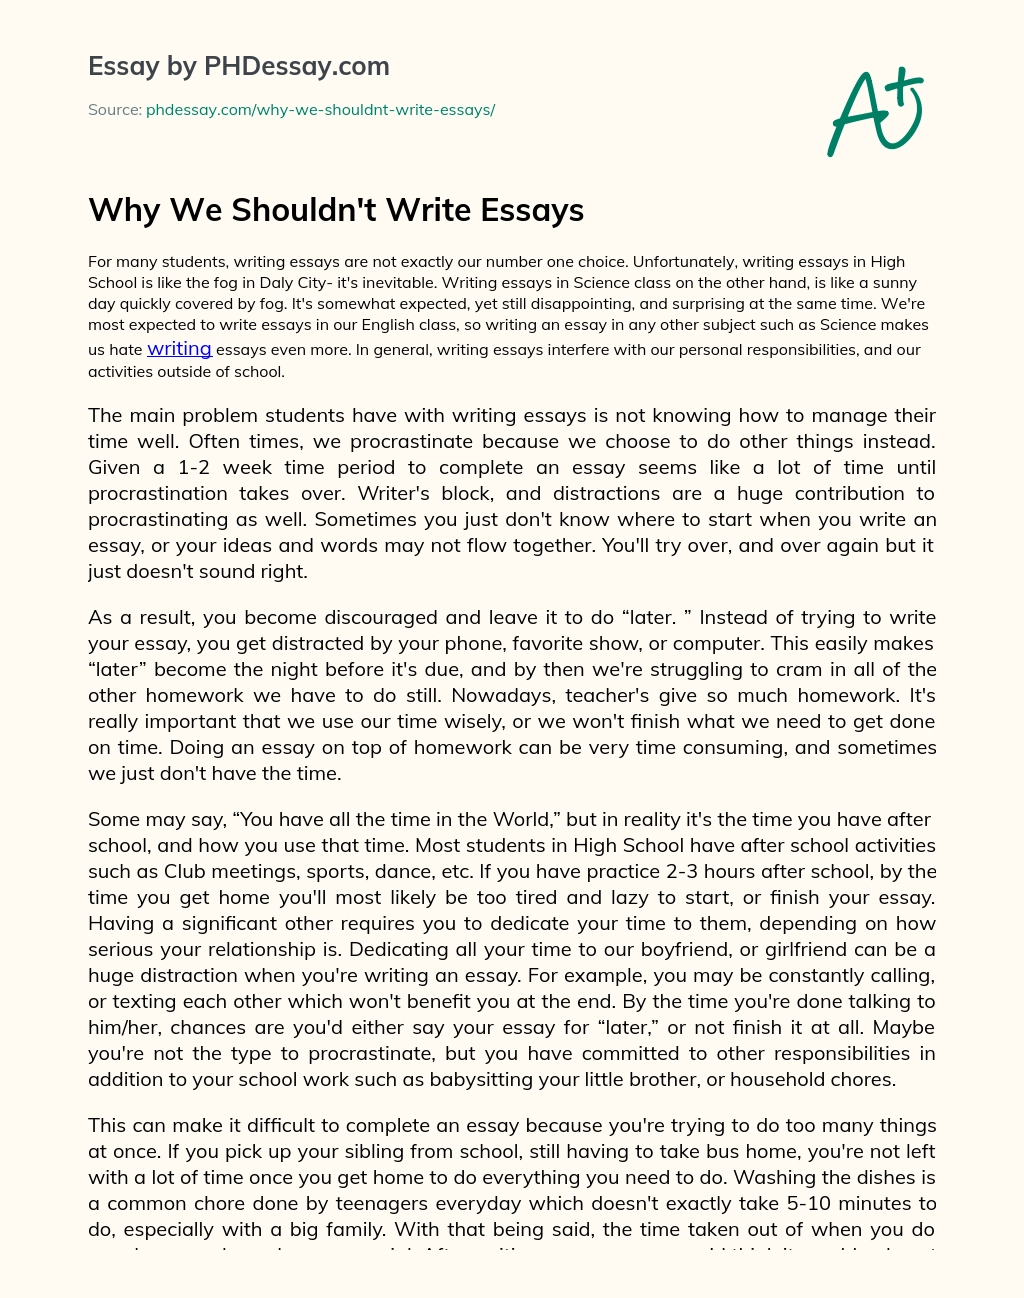 How To Write An Essay - Argumentative, Pesuasive, Narrative